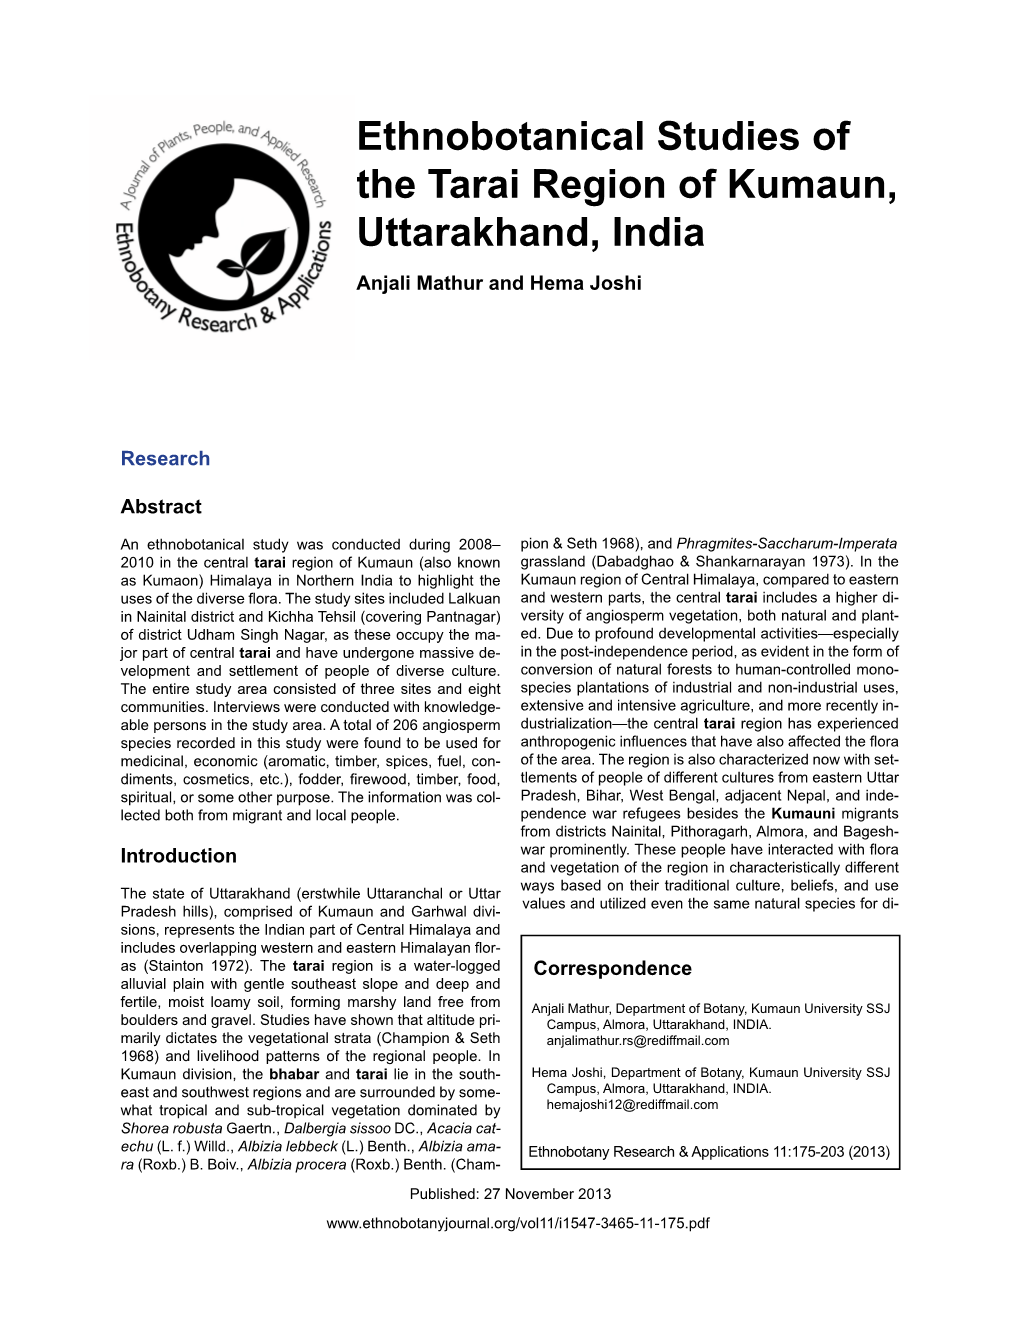 Ethnobotanical Studies of the Tarai Region of Kumaun, Uttarakhand, India Anjali Mathur and Hema Joshi